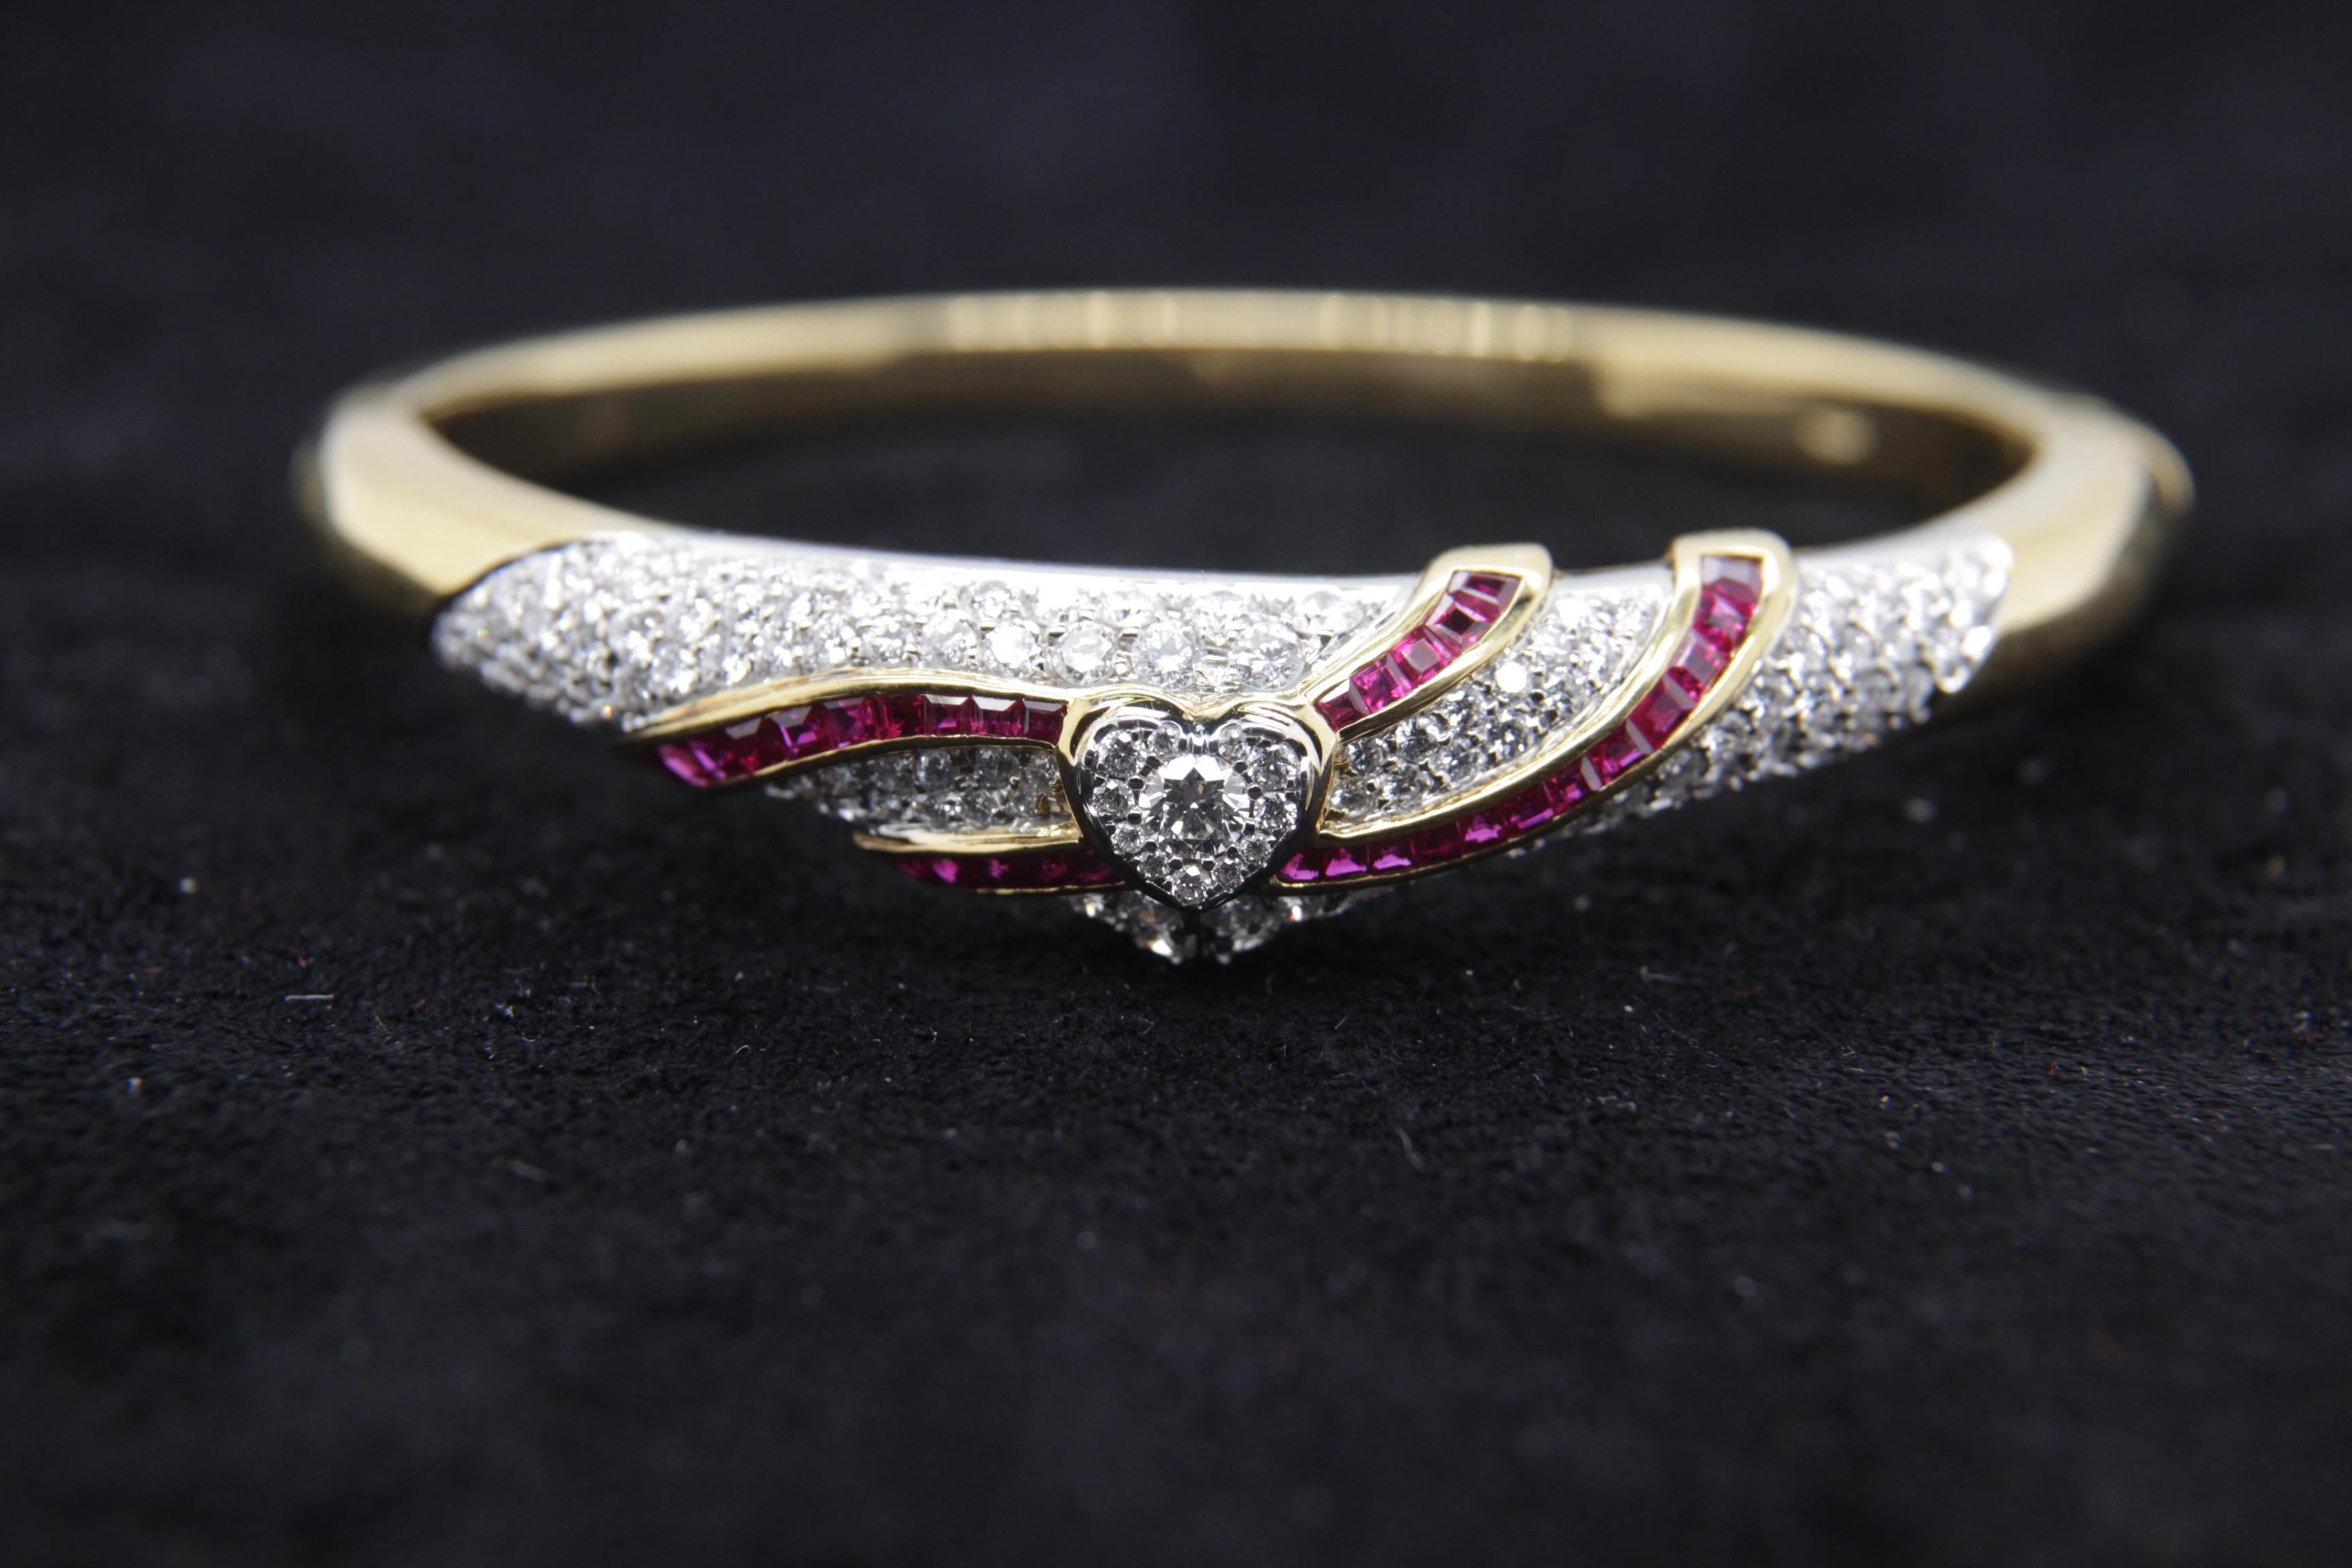 Un tout nouveau bangle en diamant et rubis en or 18 carats. Le poids total des diamants est de 3,48 carats et celui des rubis de 1,49 carats. Le poids total du bracelet est de 31,67 grammes.